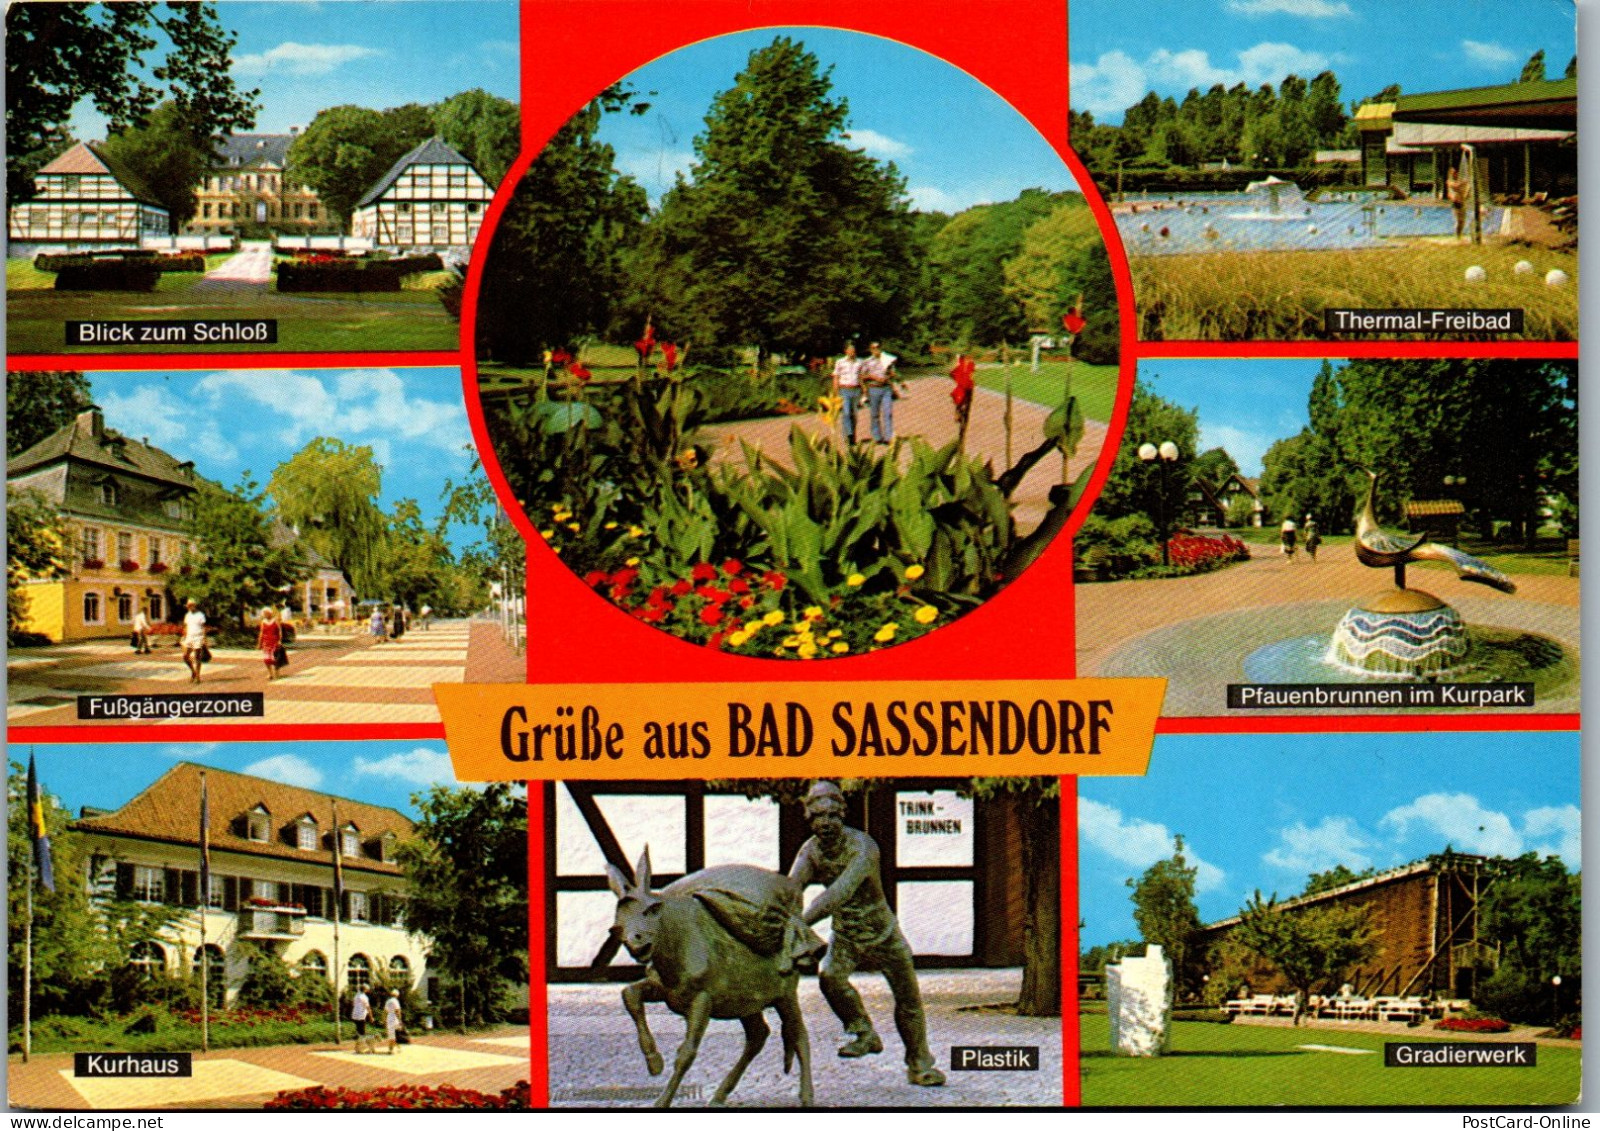 47901 - Deutschland - Bad Sassendorf , Schloß , Füßgängerzone , Plastik , Freibad , Gradierwerk , Mehrbildkarte - 1984 - Bad Sassendorf